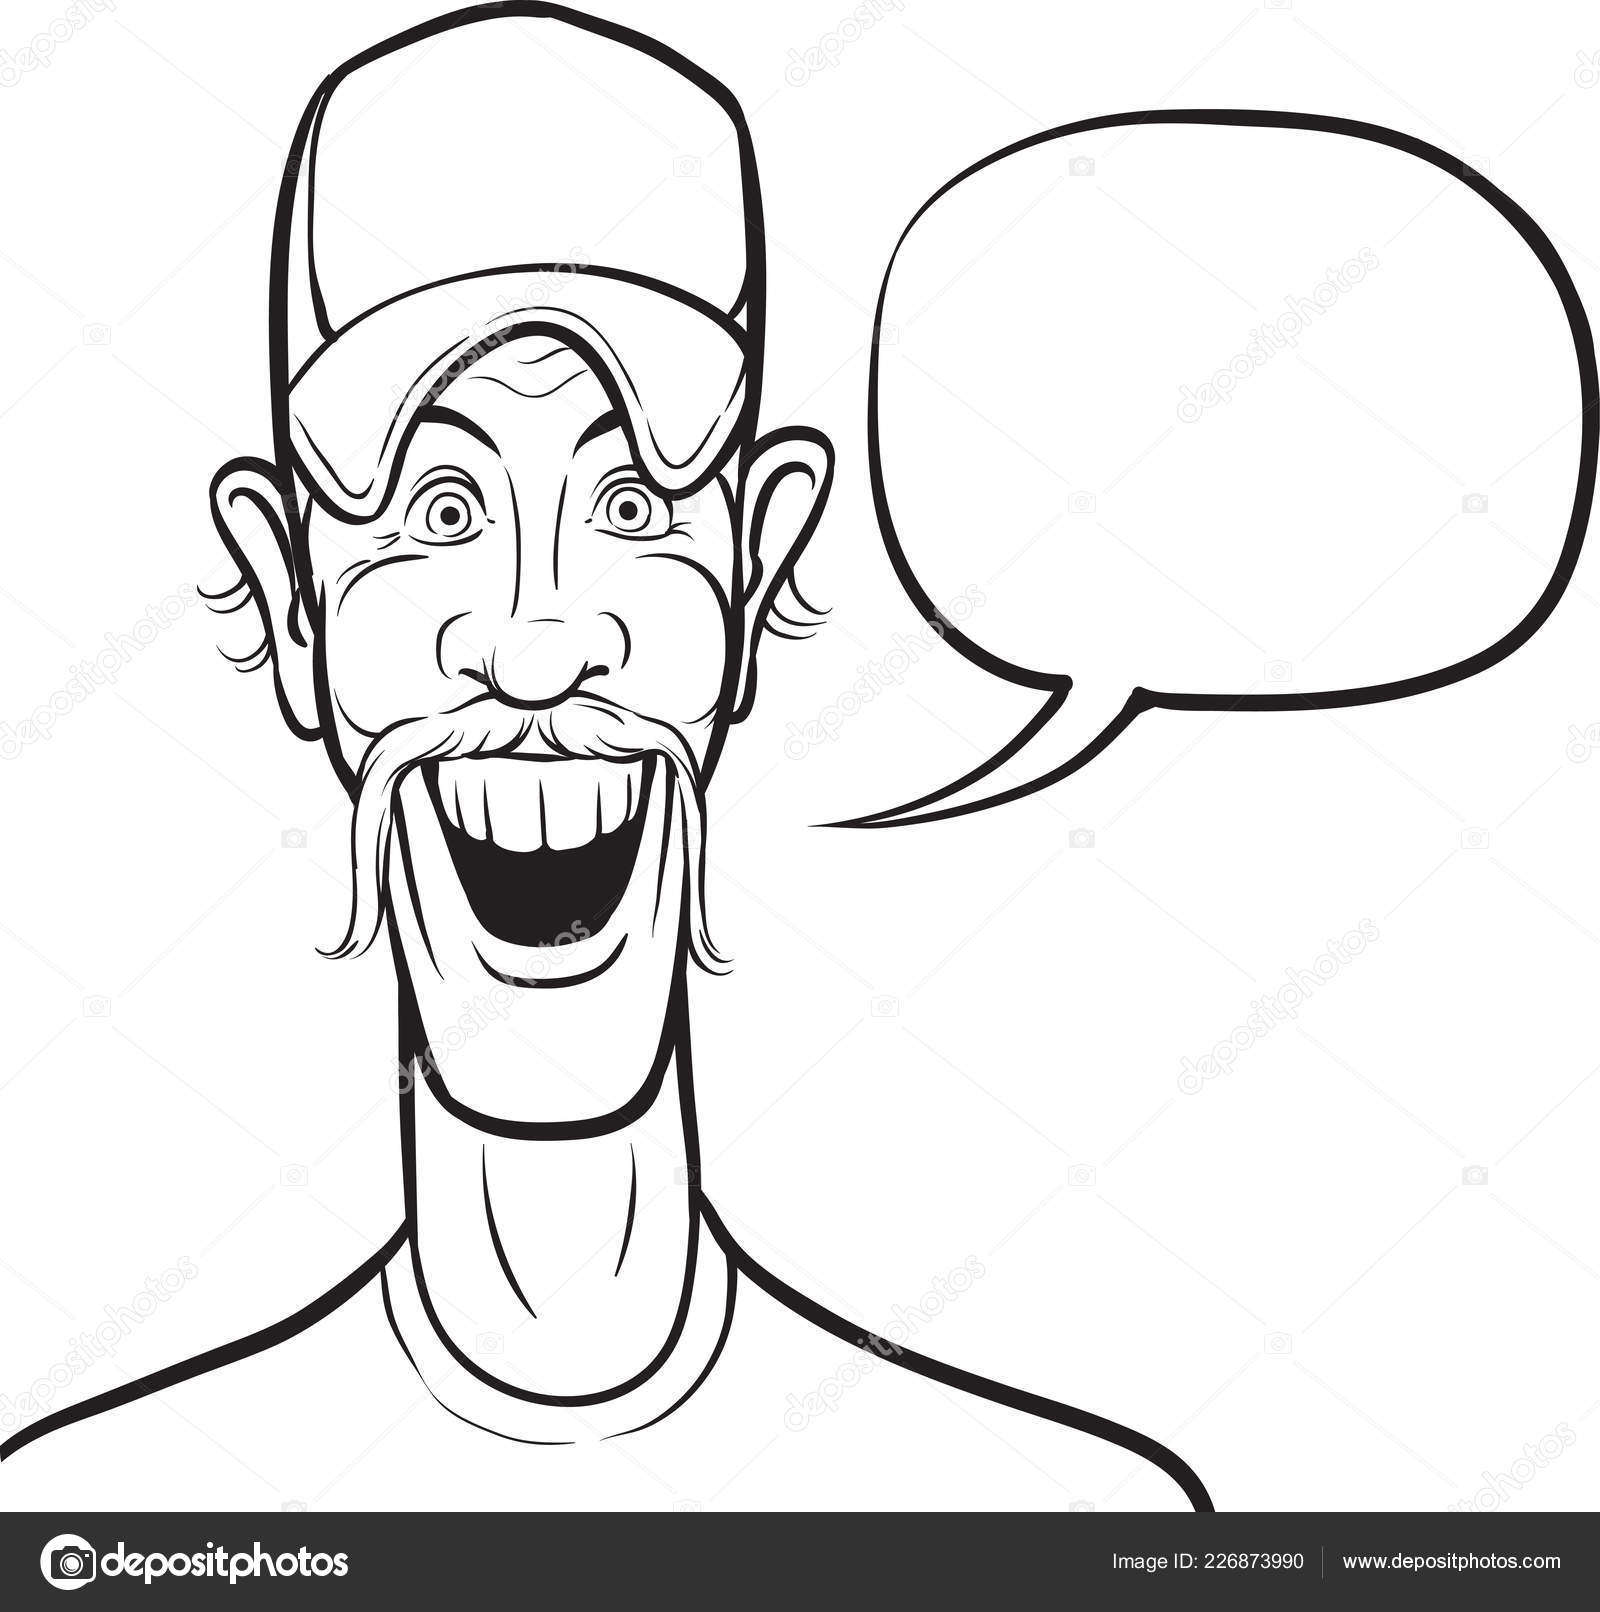 Comic cartoon smiling man Vector Art Stock Images | Depositphotos